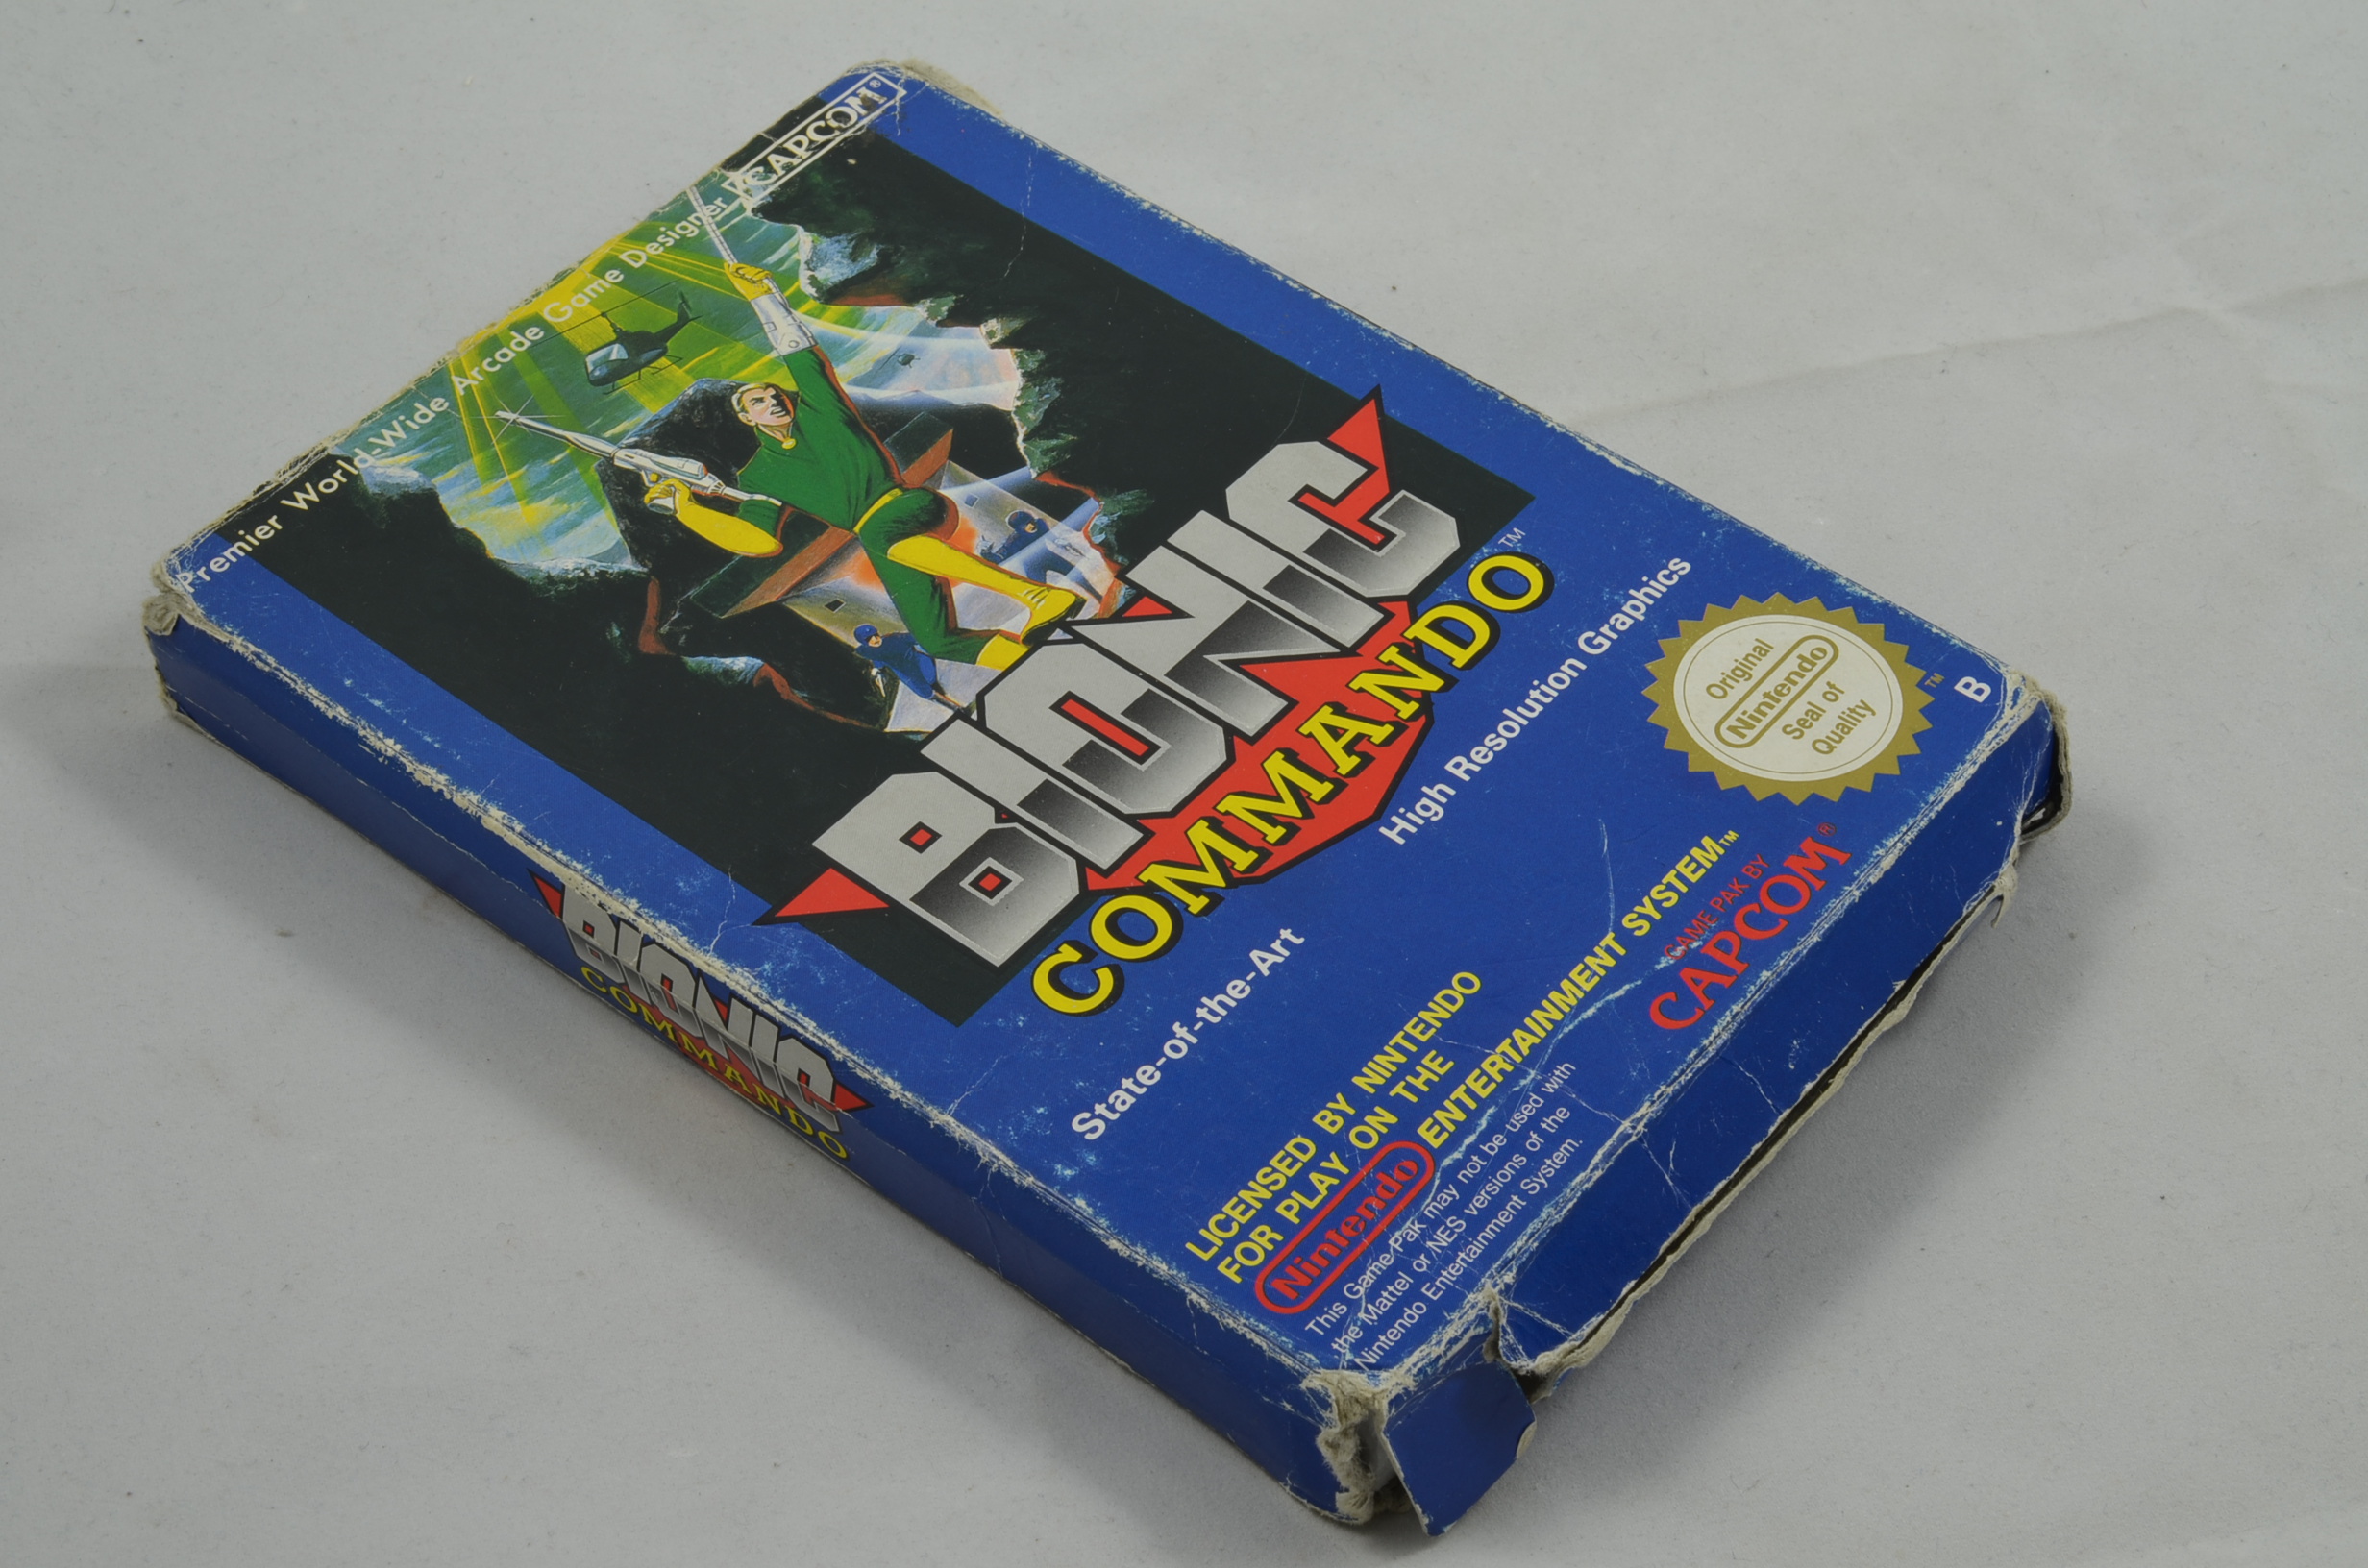 Produktbild von Bionic Commando NES Spiel CIB